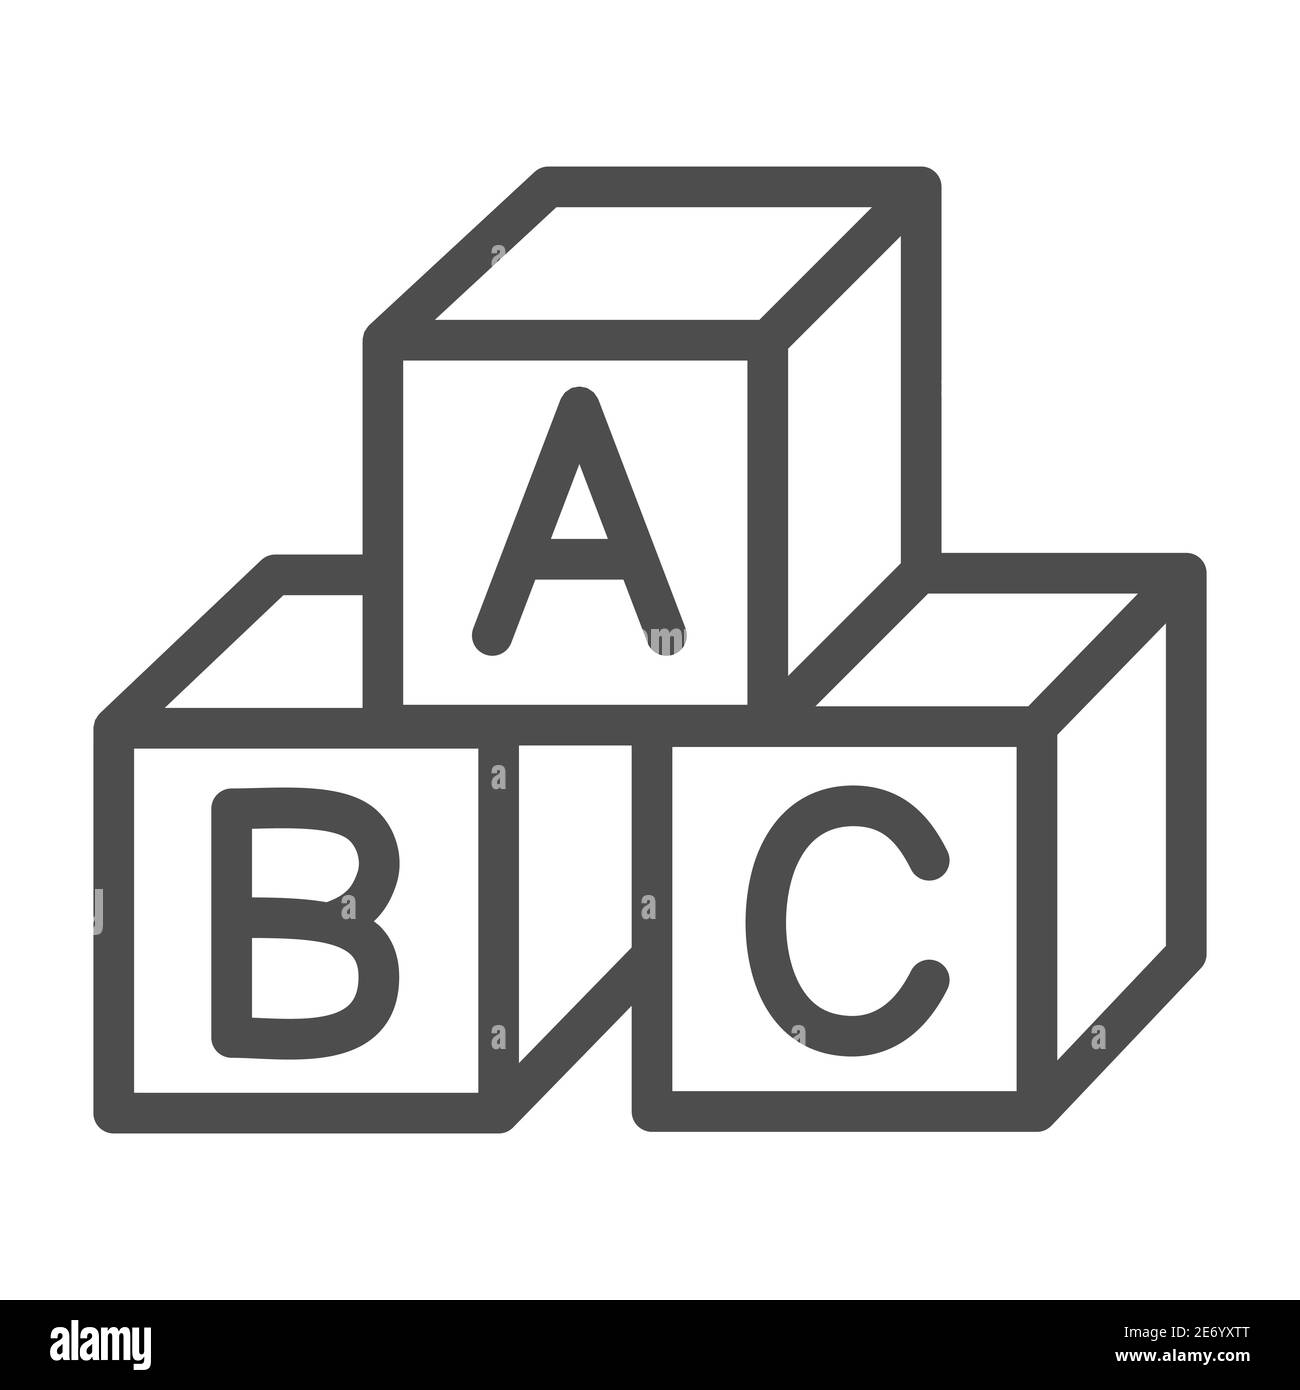 Cubos de niños icono de concepto de educación, cubos de juguete con letras signo sobre fondo blanco, bloques del alfabeto letras A,B,C icono en estilo contorno Imagen Vector de stock